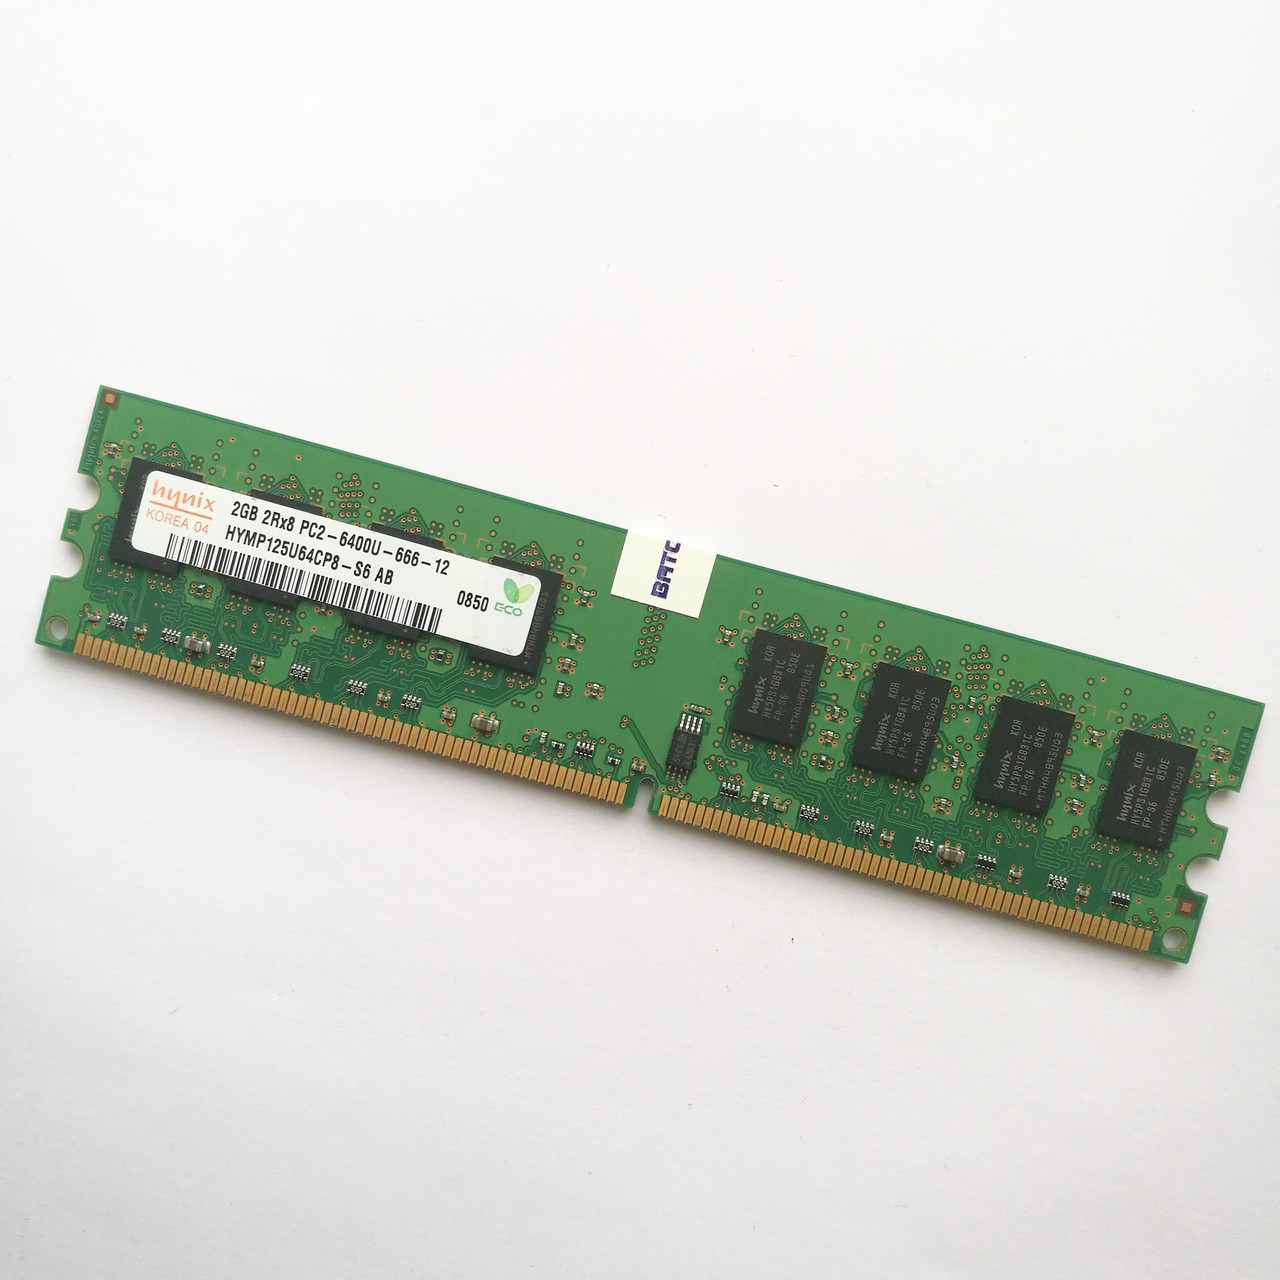 Оперативна пам'ять Hynix DDR2 2Gb 800MHz PC2 6400U CL6 (HYMP125U64CP8-S6 AB) Б/В, фото 1